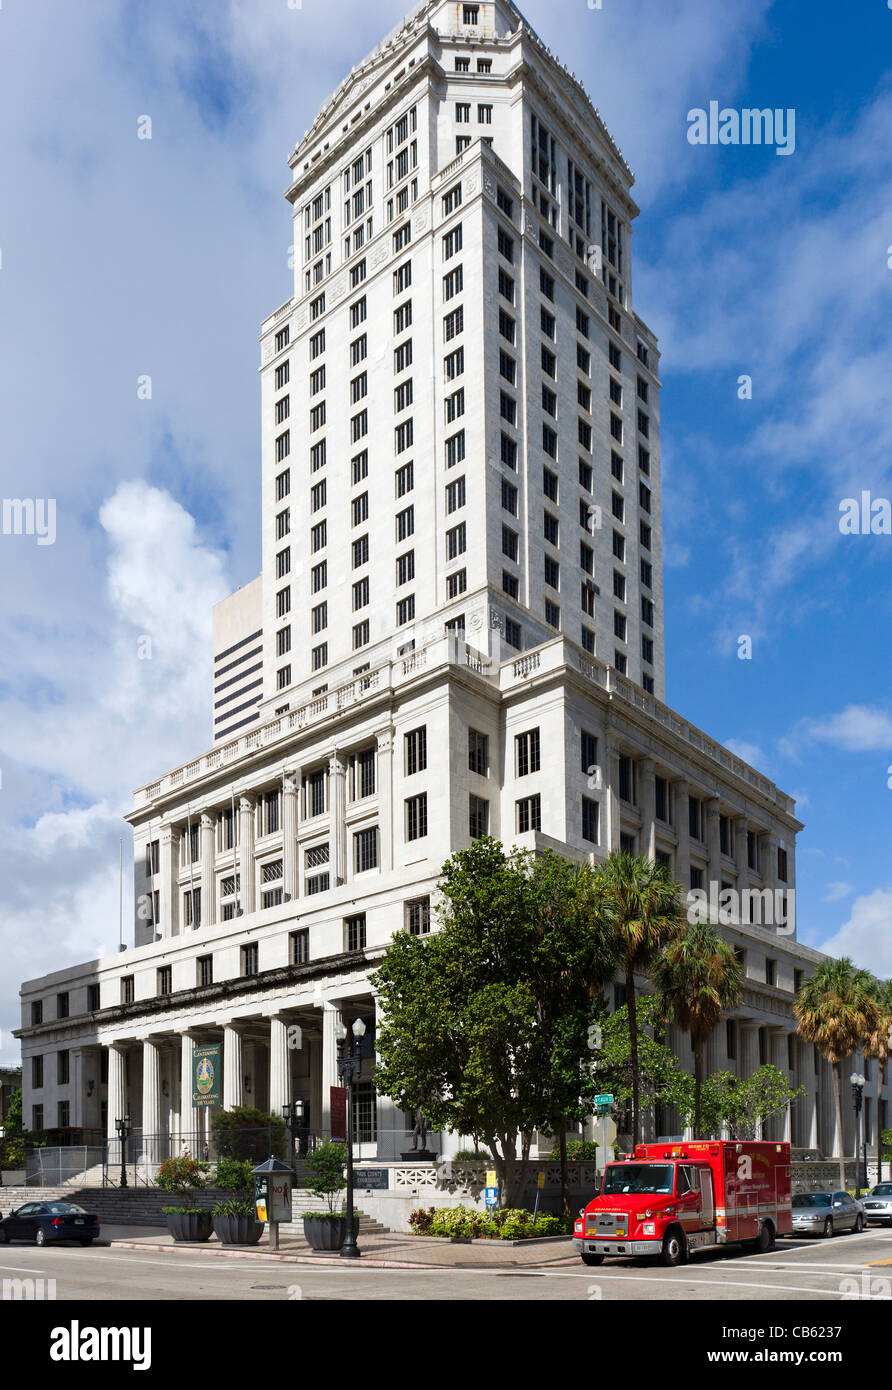 Miami-Dade County Courthouse, West Flagler Street, Miami, Florida, USA  Stockfotografie - Alamy